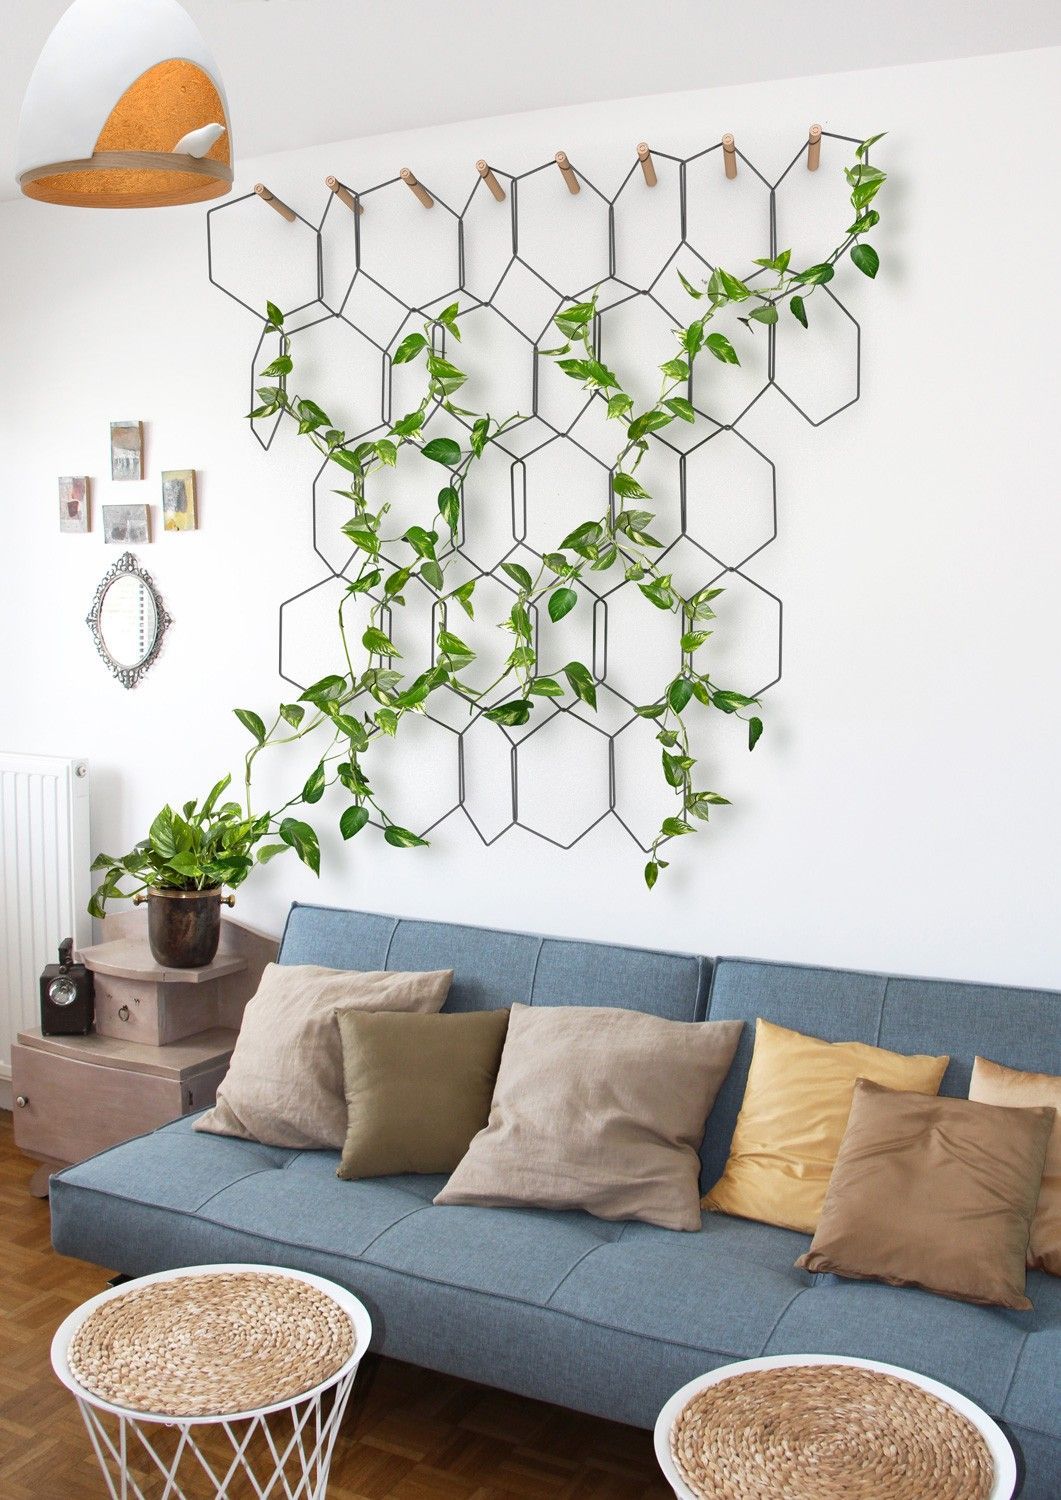 ANNO par Fr?deric Malphettes -   17 plants Art decor ideas